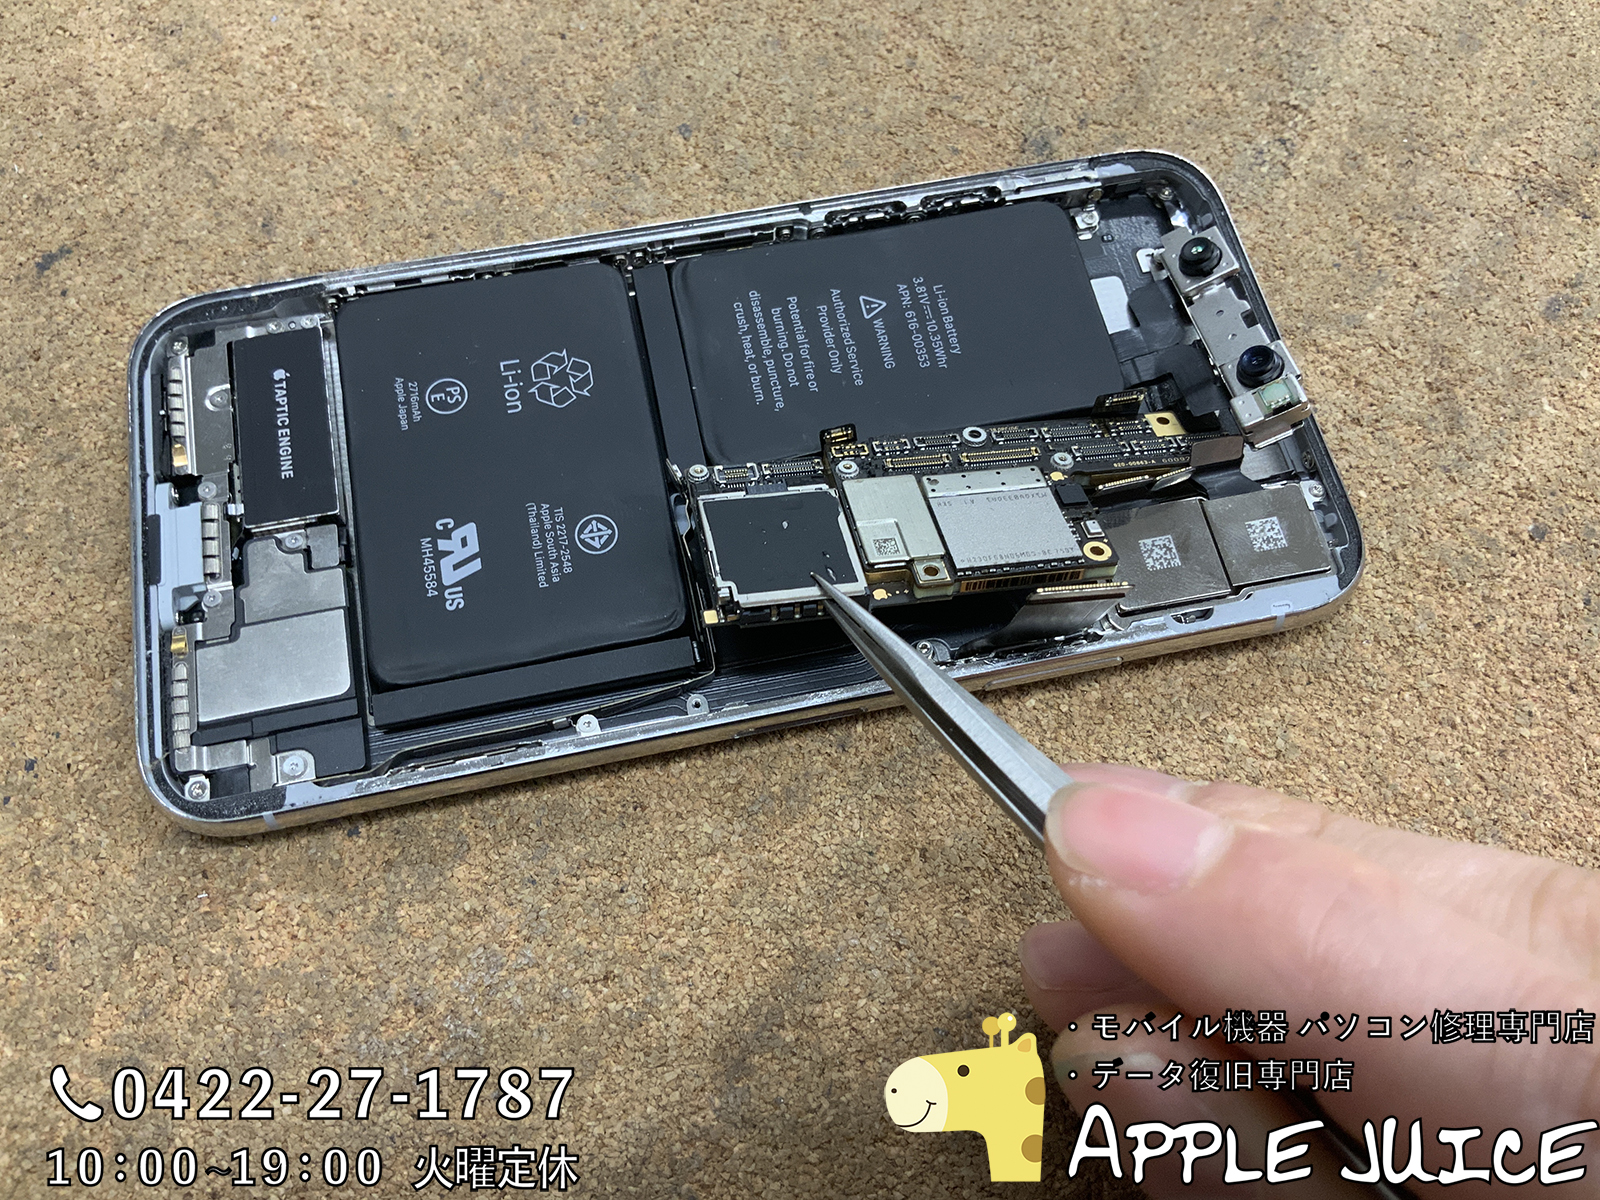 他店でiphoneの基板の破損 Cpuの破損でデータ復旧不可と言われても修理できる見込みあります 配送修理も承っており 見積もり無料ですのでご相談ください Iphone Ipad Ipod Mac修理 データ復旧 基板修理 Applejuice吉祥寺店